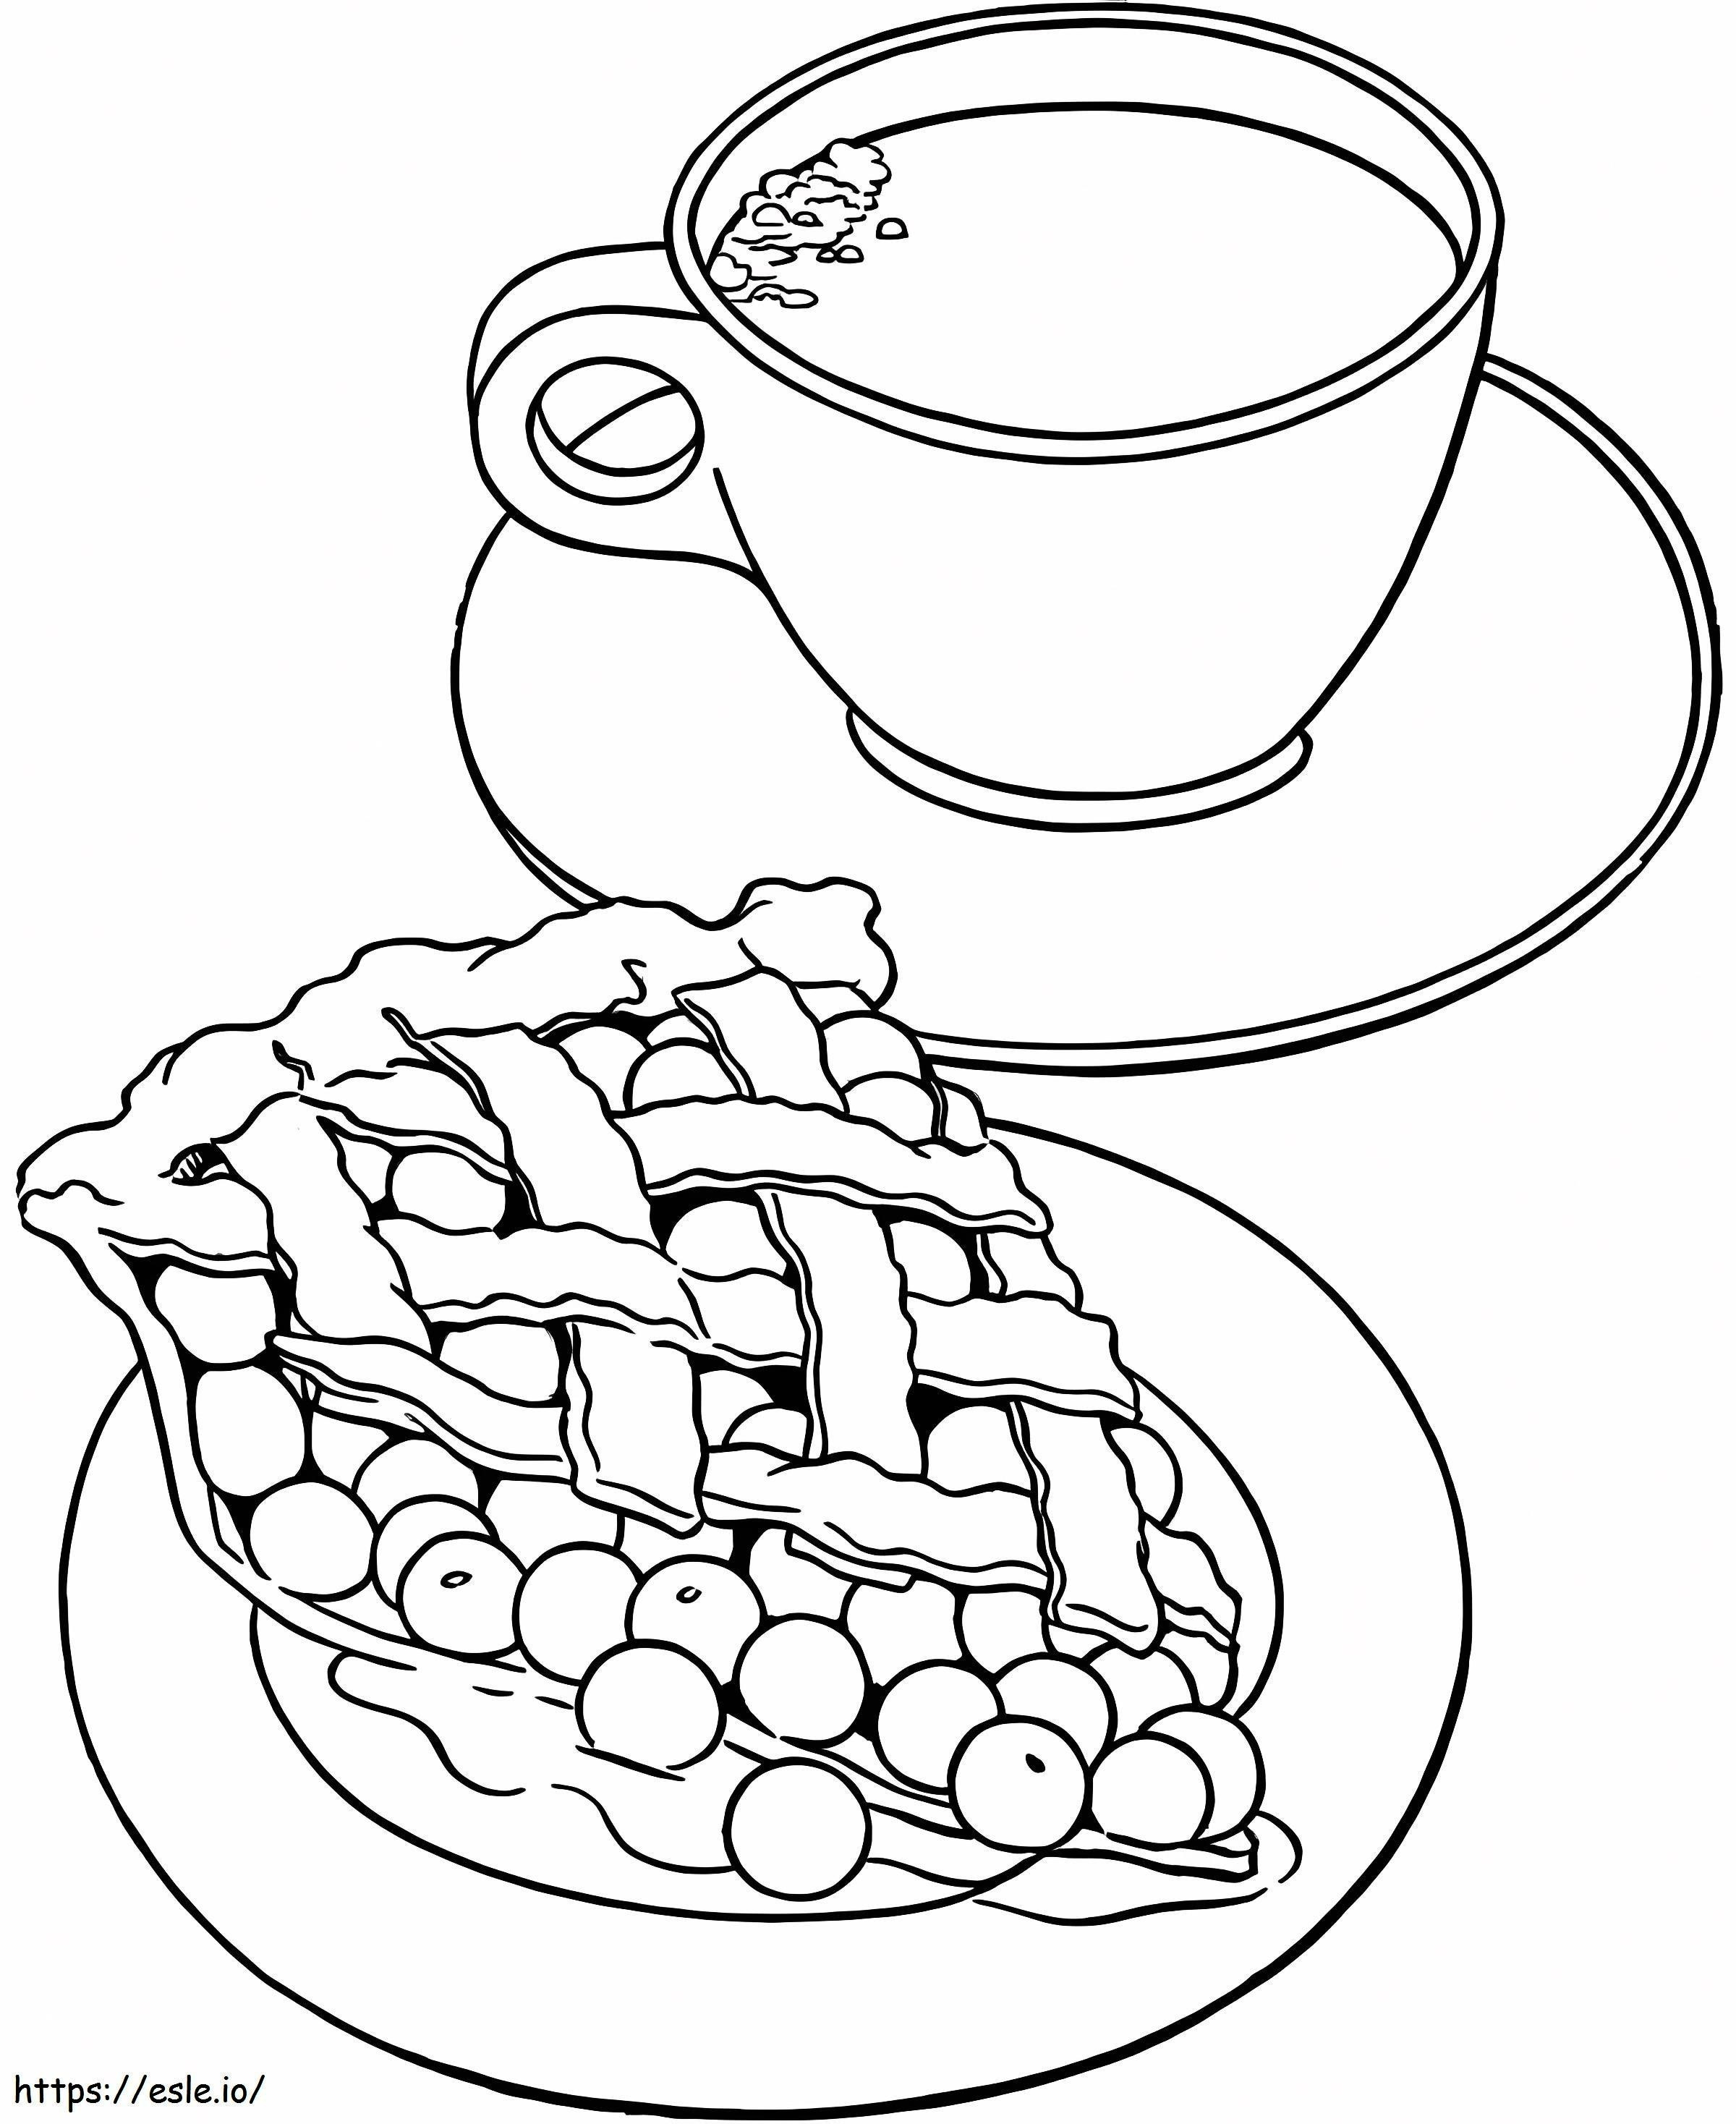 Kuchen mit Kaffee ausmalbilder